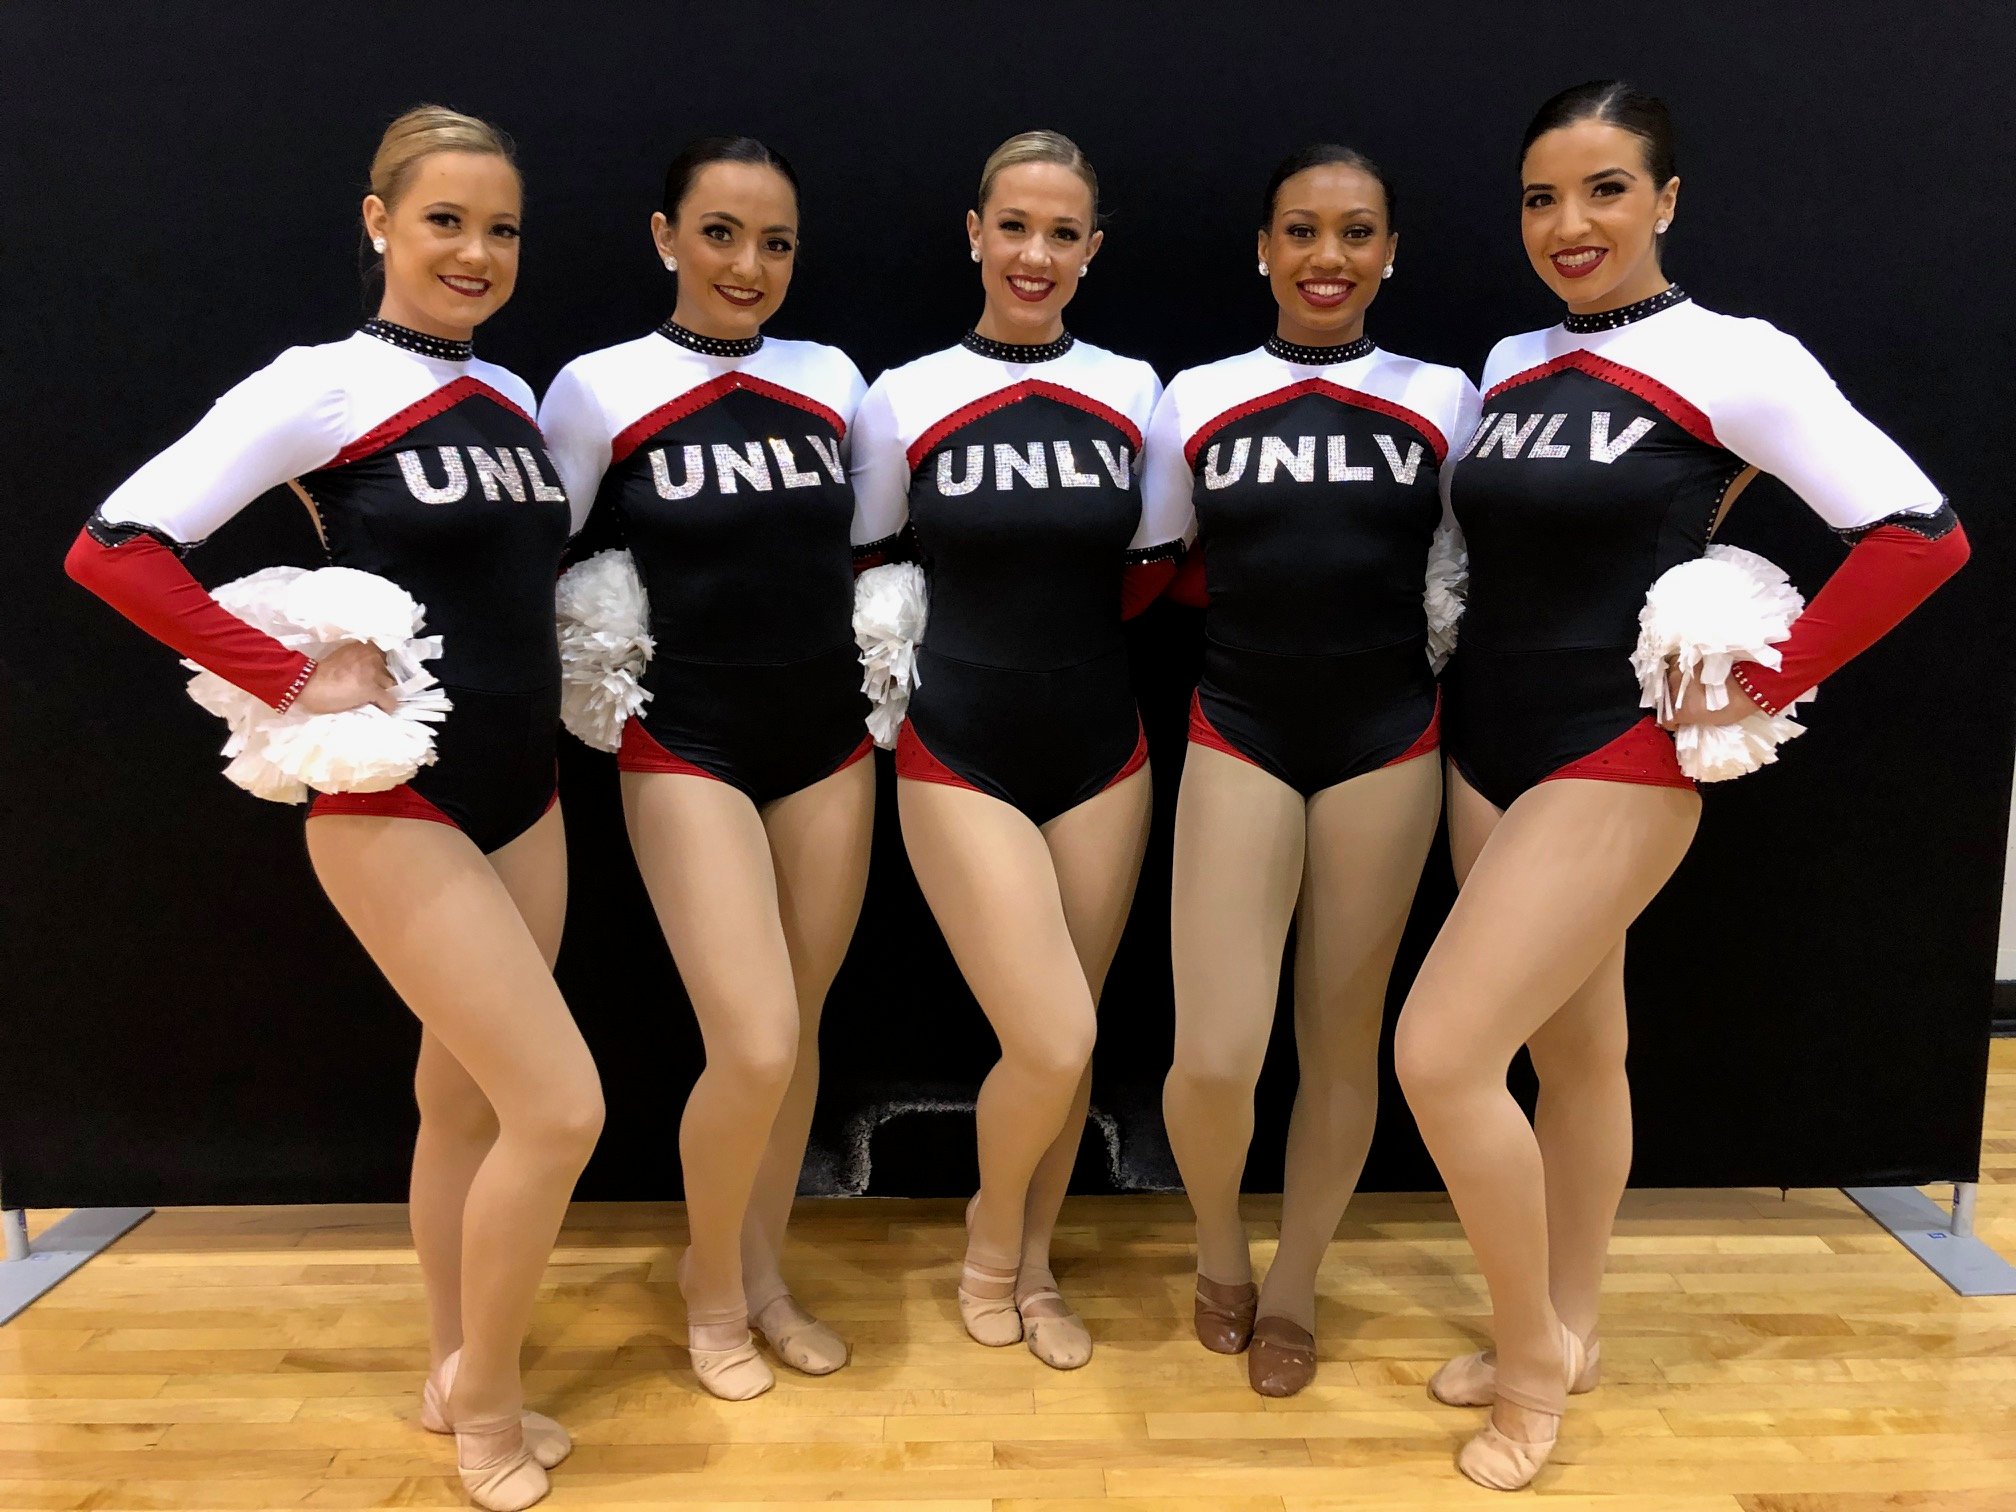 Team Spotlight UNLV Rebel Girls' Custom Pom Uniforms Are Traditional